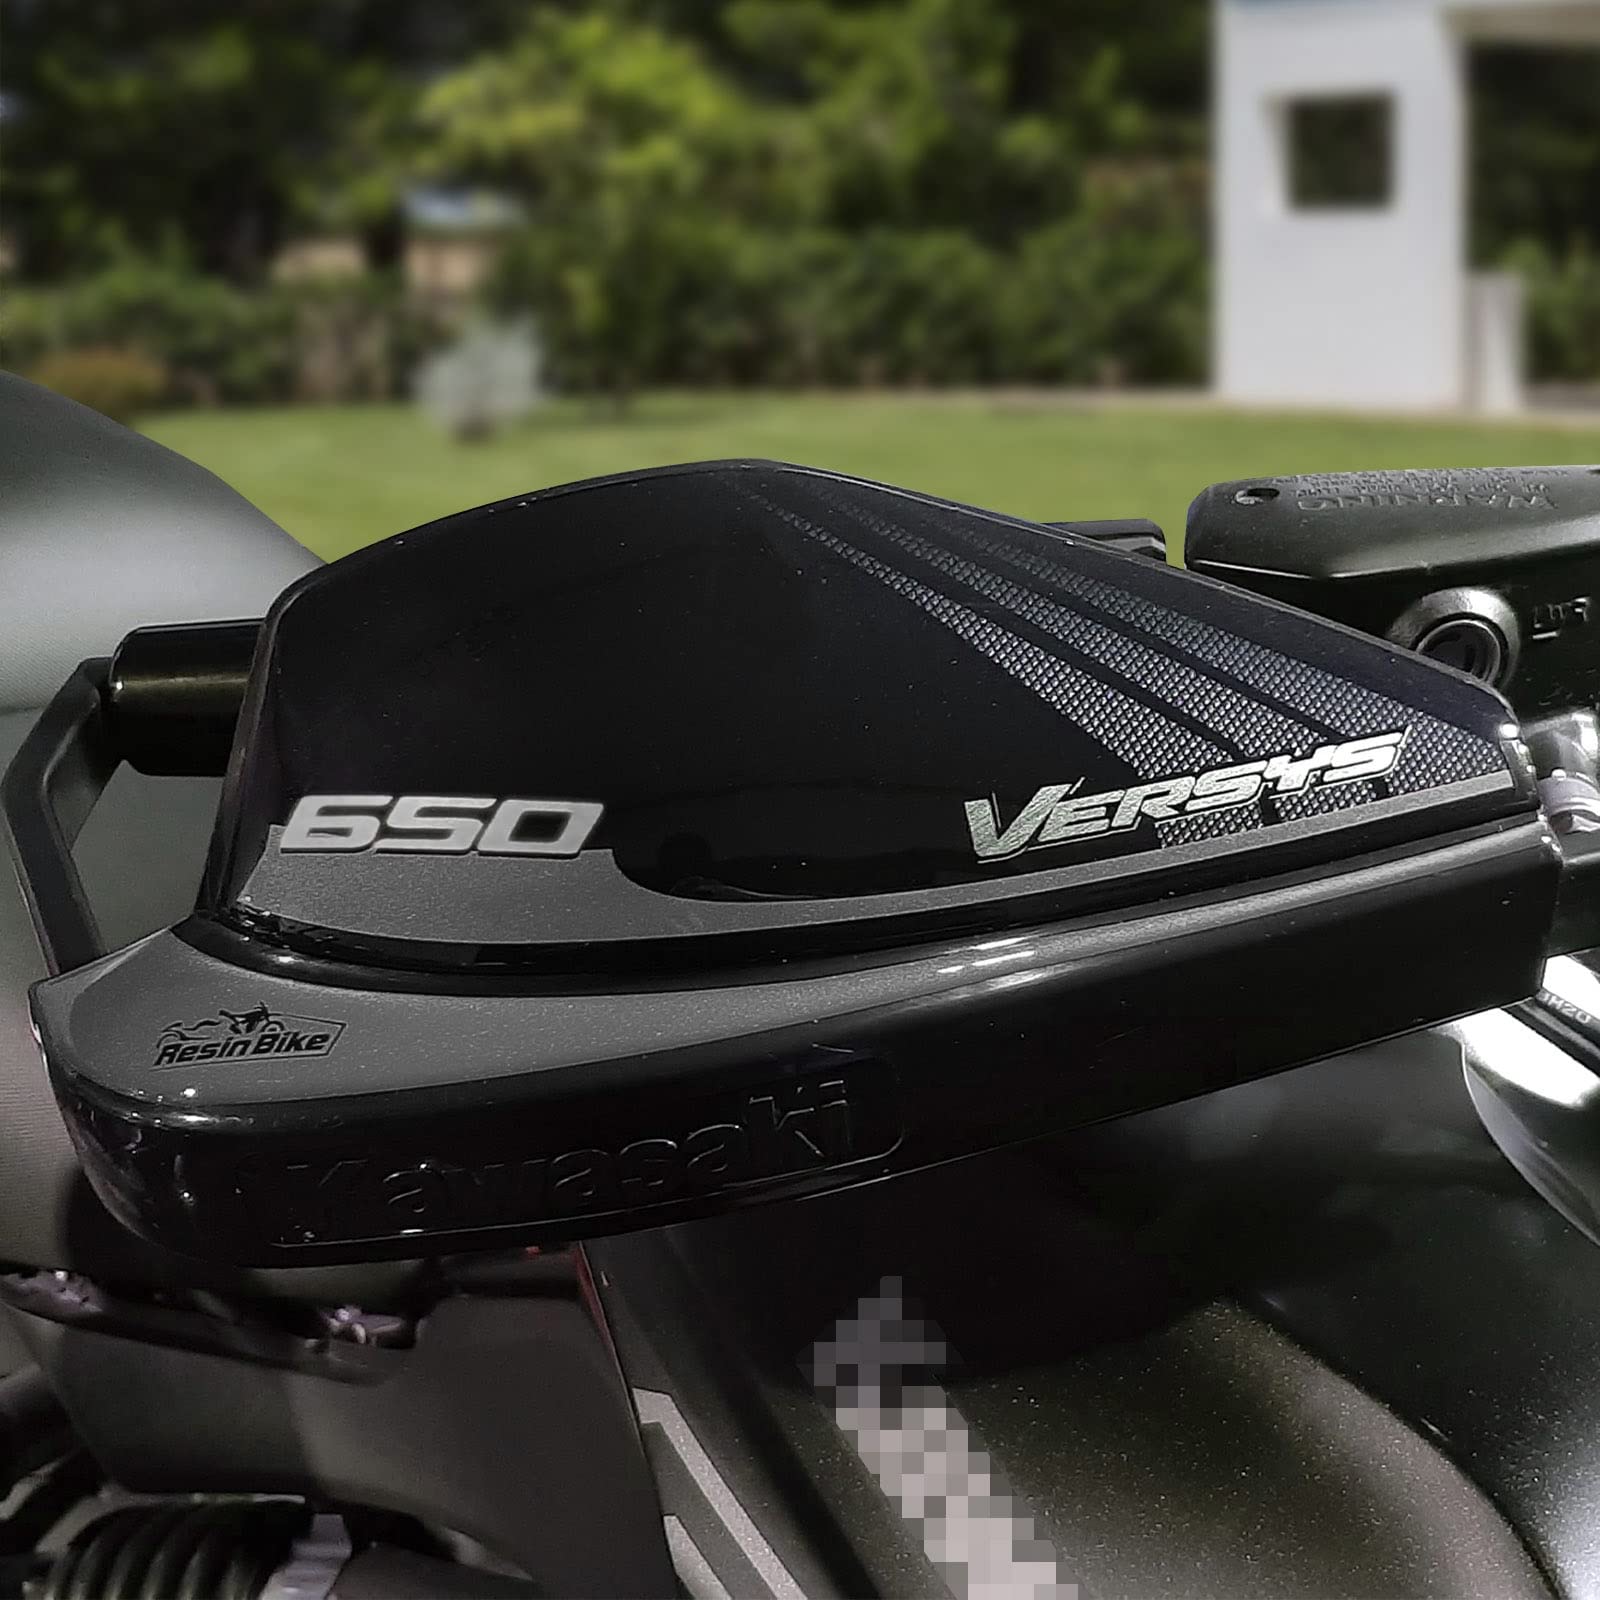 Resin Bike Aufkleber für Motorrad Kompatibel mit Kawasaki Versys 650 2017-2021. Handschutz vor Stößen und Kratzern. Paar 3D-Harzklebstoff – Stickers - Made in Italy von Resin Bike